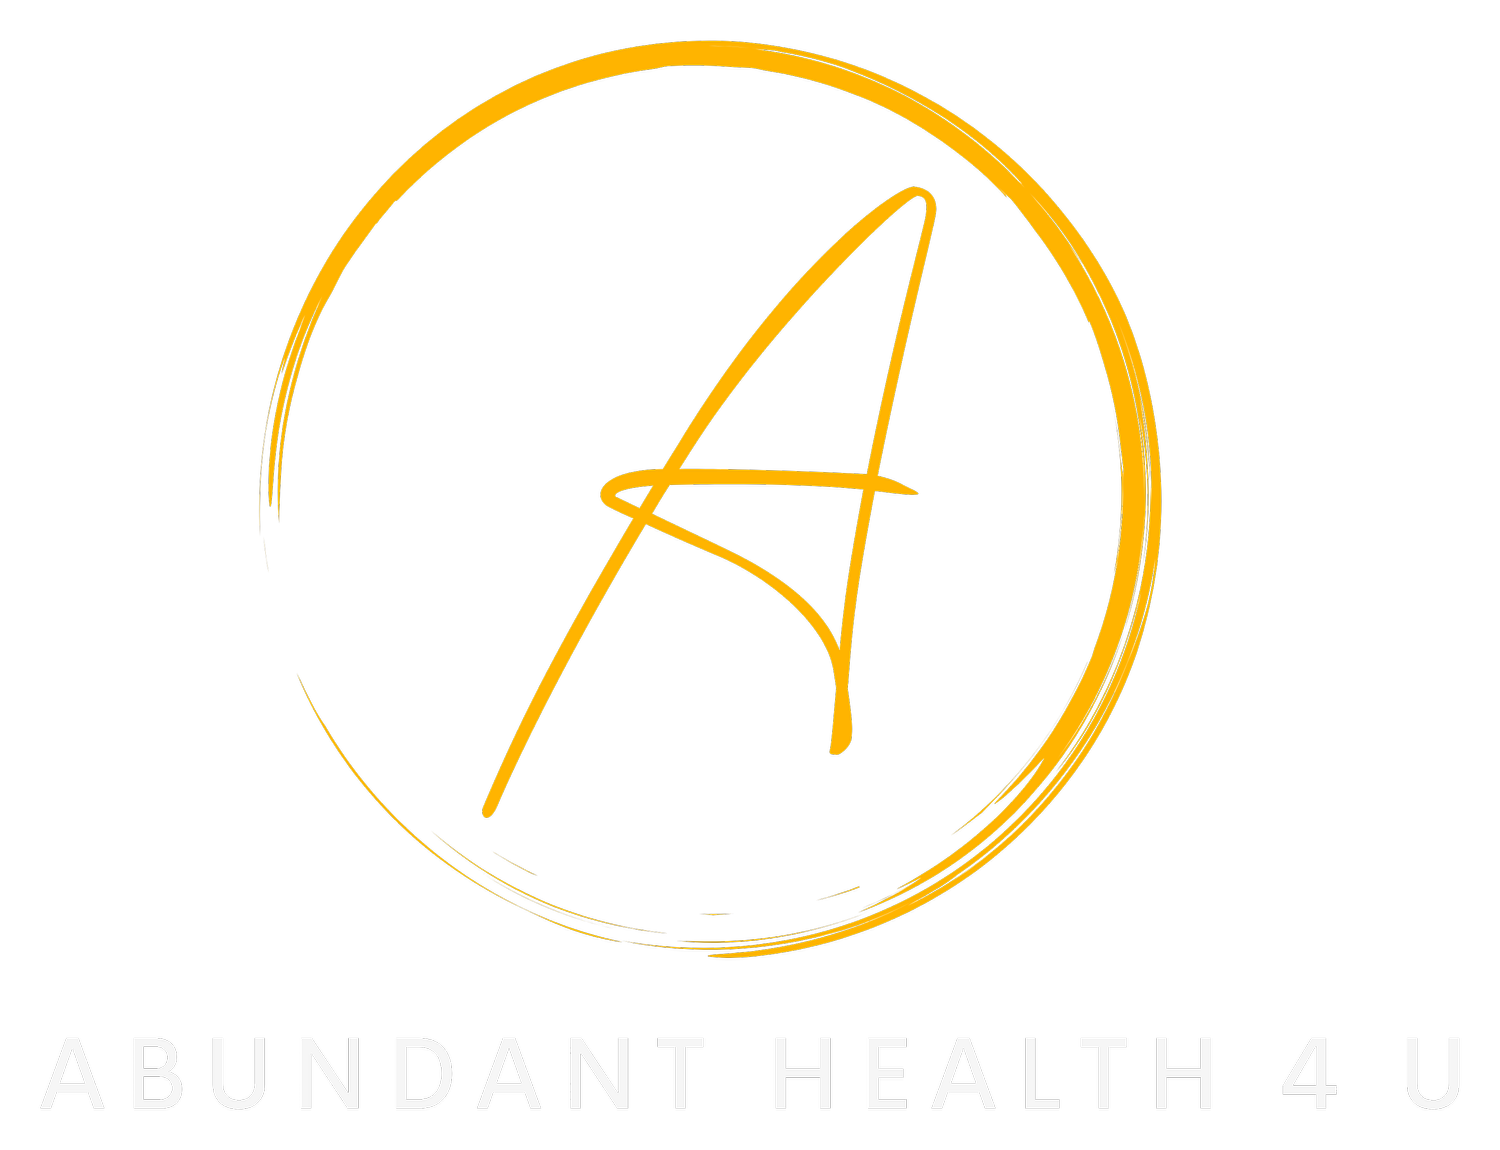 Abundant Health 4 U